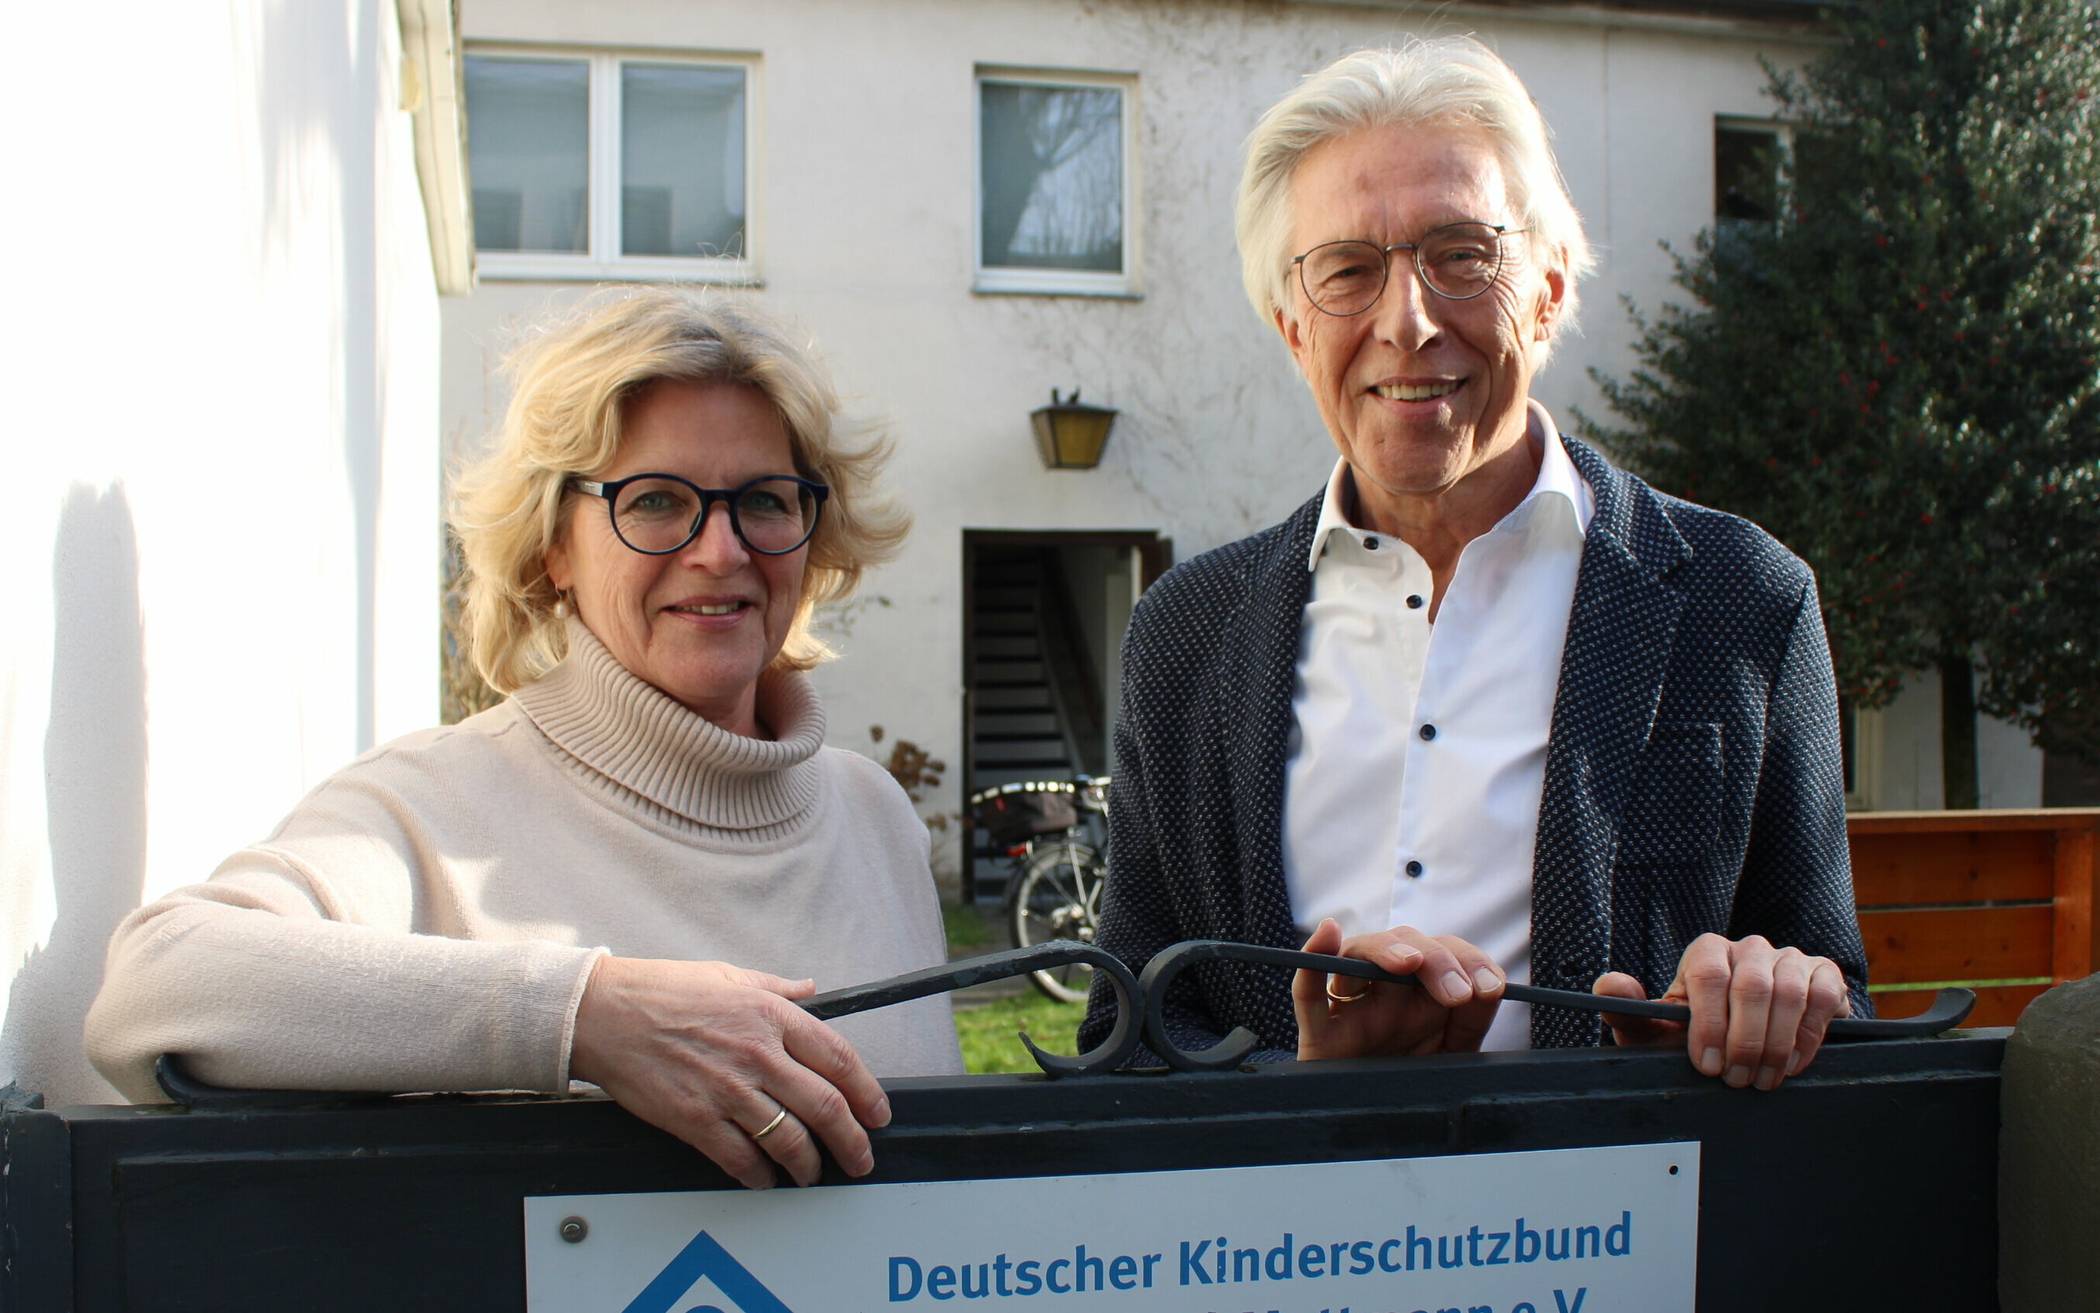  Suchen dringend Unterstützung: Kinderschutzbund-Geschäftsführerin Angela Mäder und Vorsitzender Dr.Jürgen Winkelmann.  